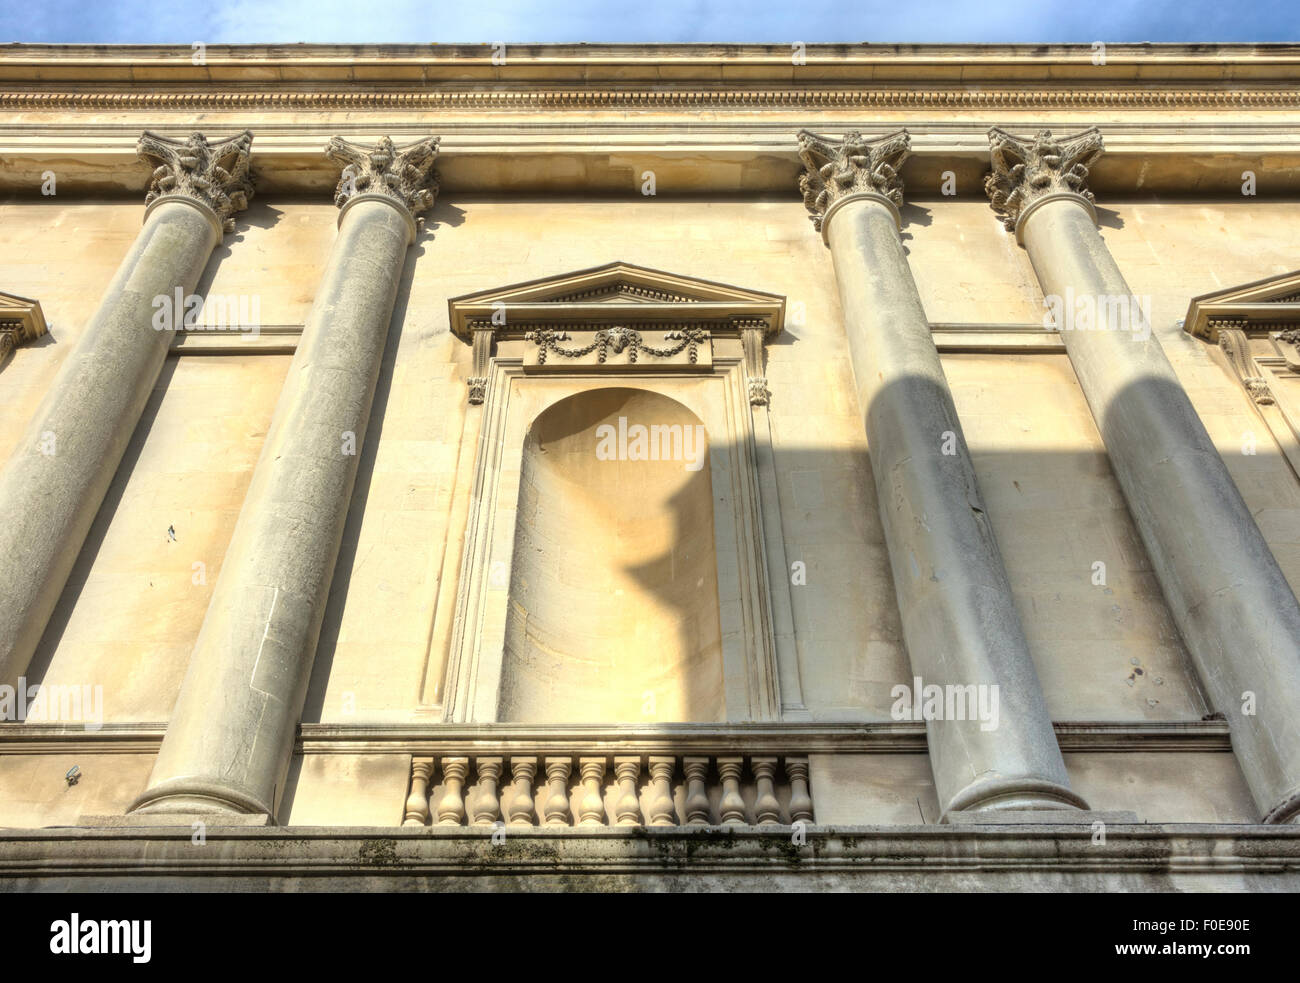 Stadt Bath, England Architektur Bad Spalten. Klassischen Säulen. Stockfoto